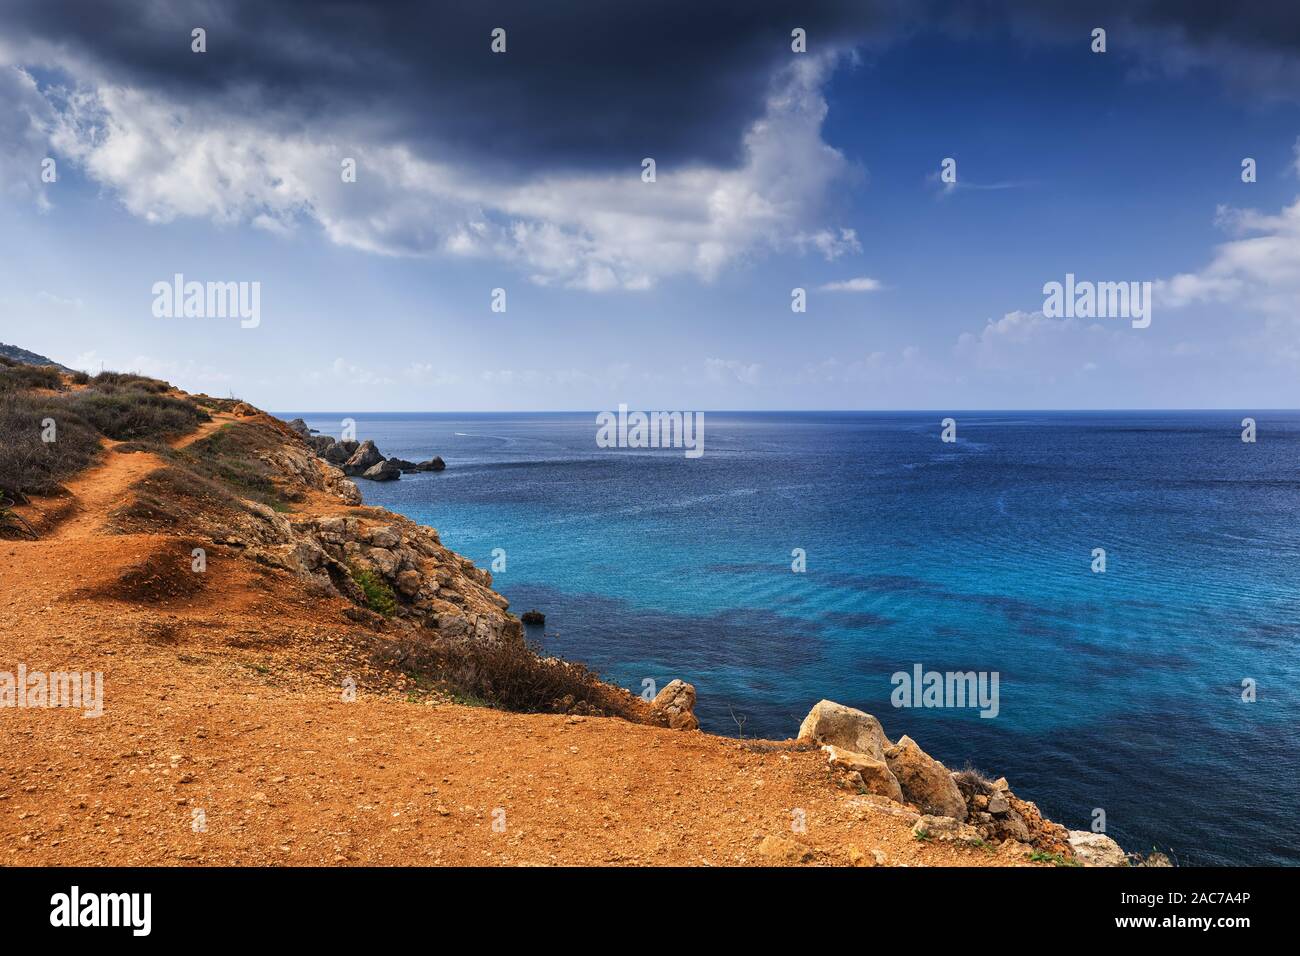 Mare Mediterraneo costa di Isola di Malta, il più grande arcipelago Maltese, a nord-ovest della regione. Foto Stock